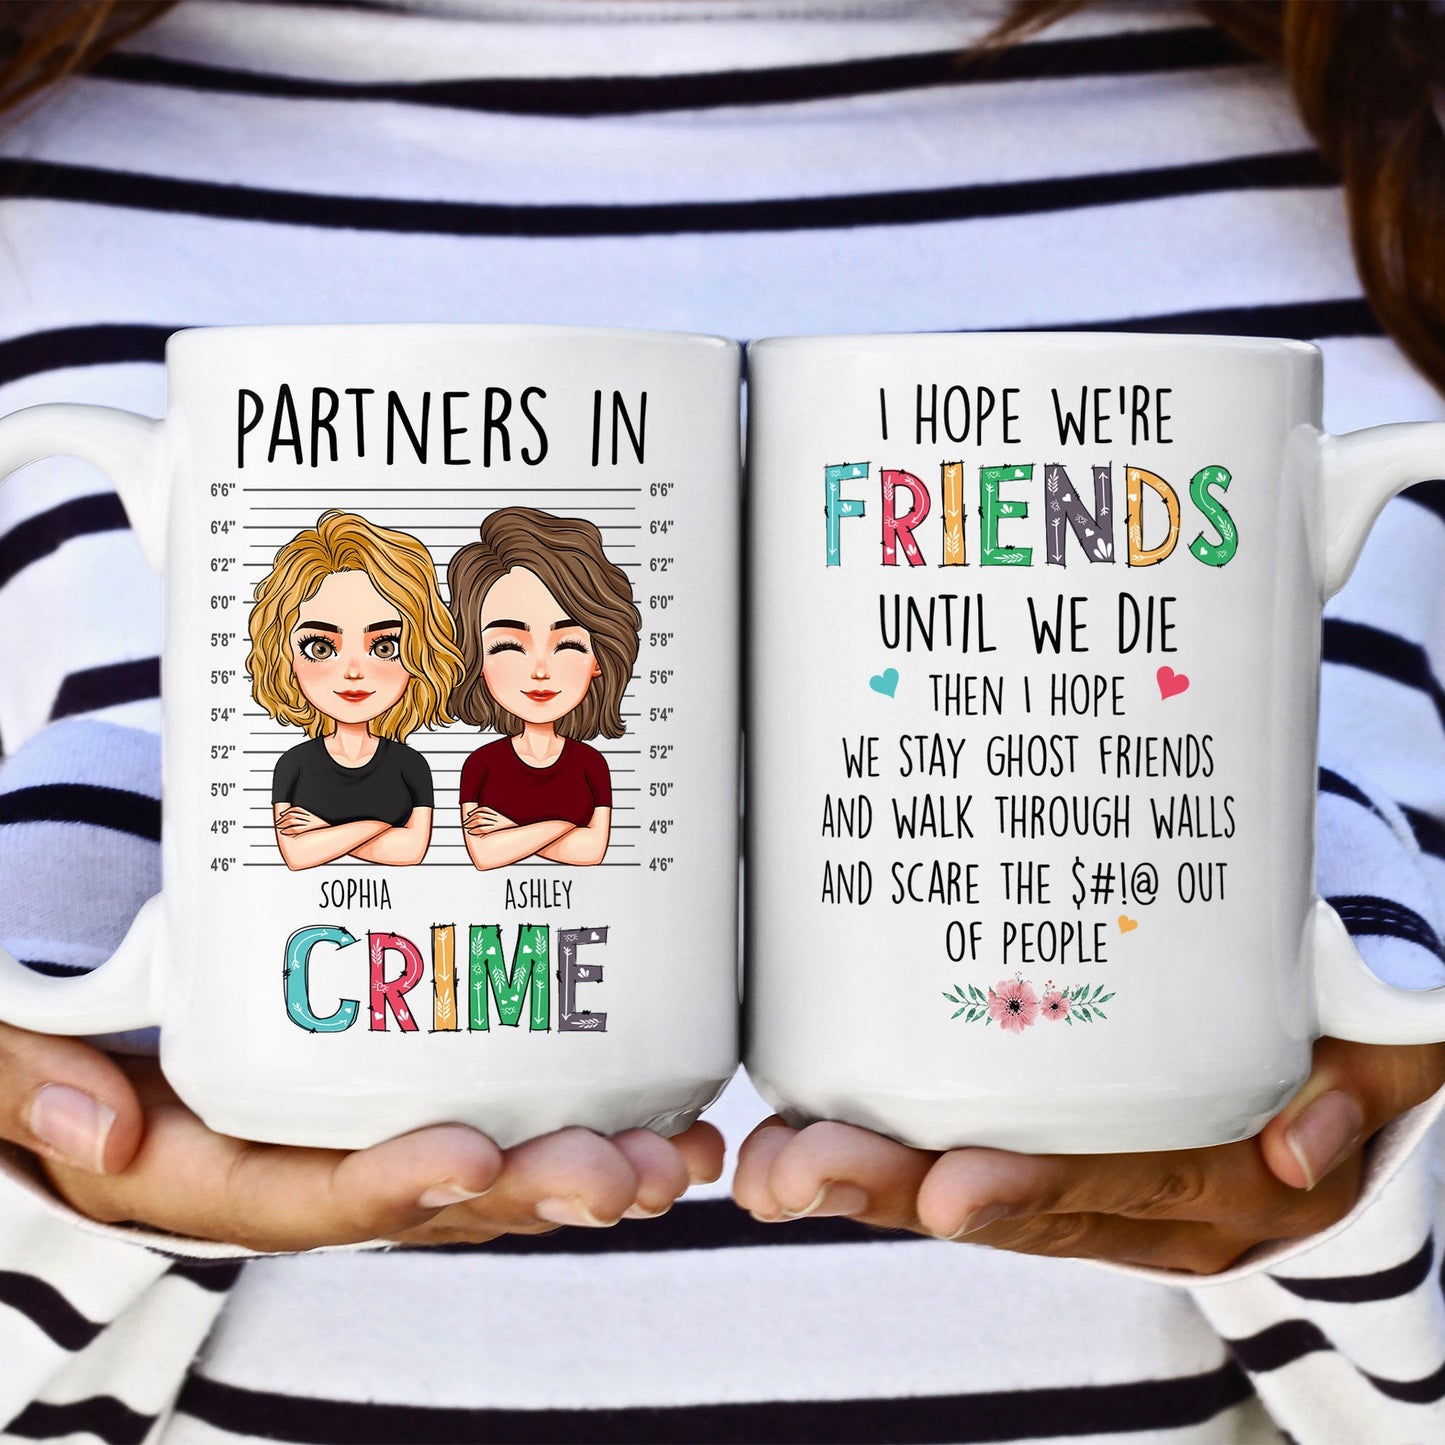 We're Friends Until We Die - Personalized Mug